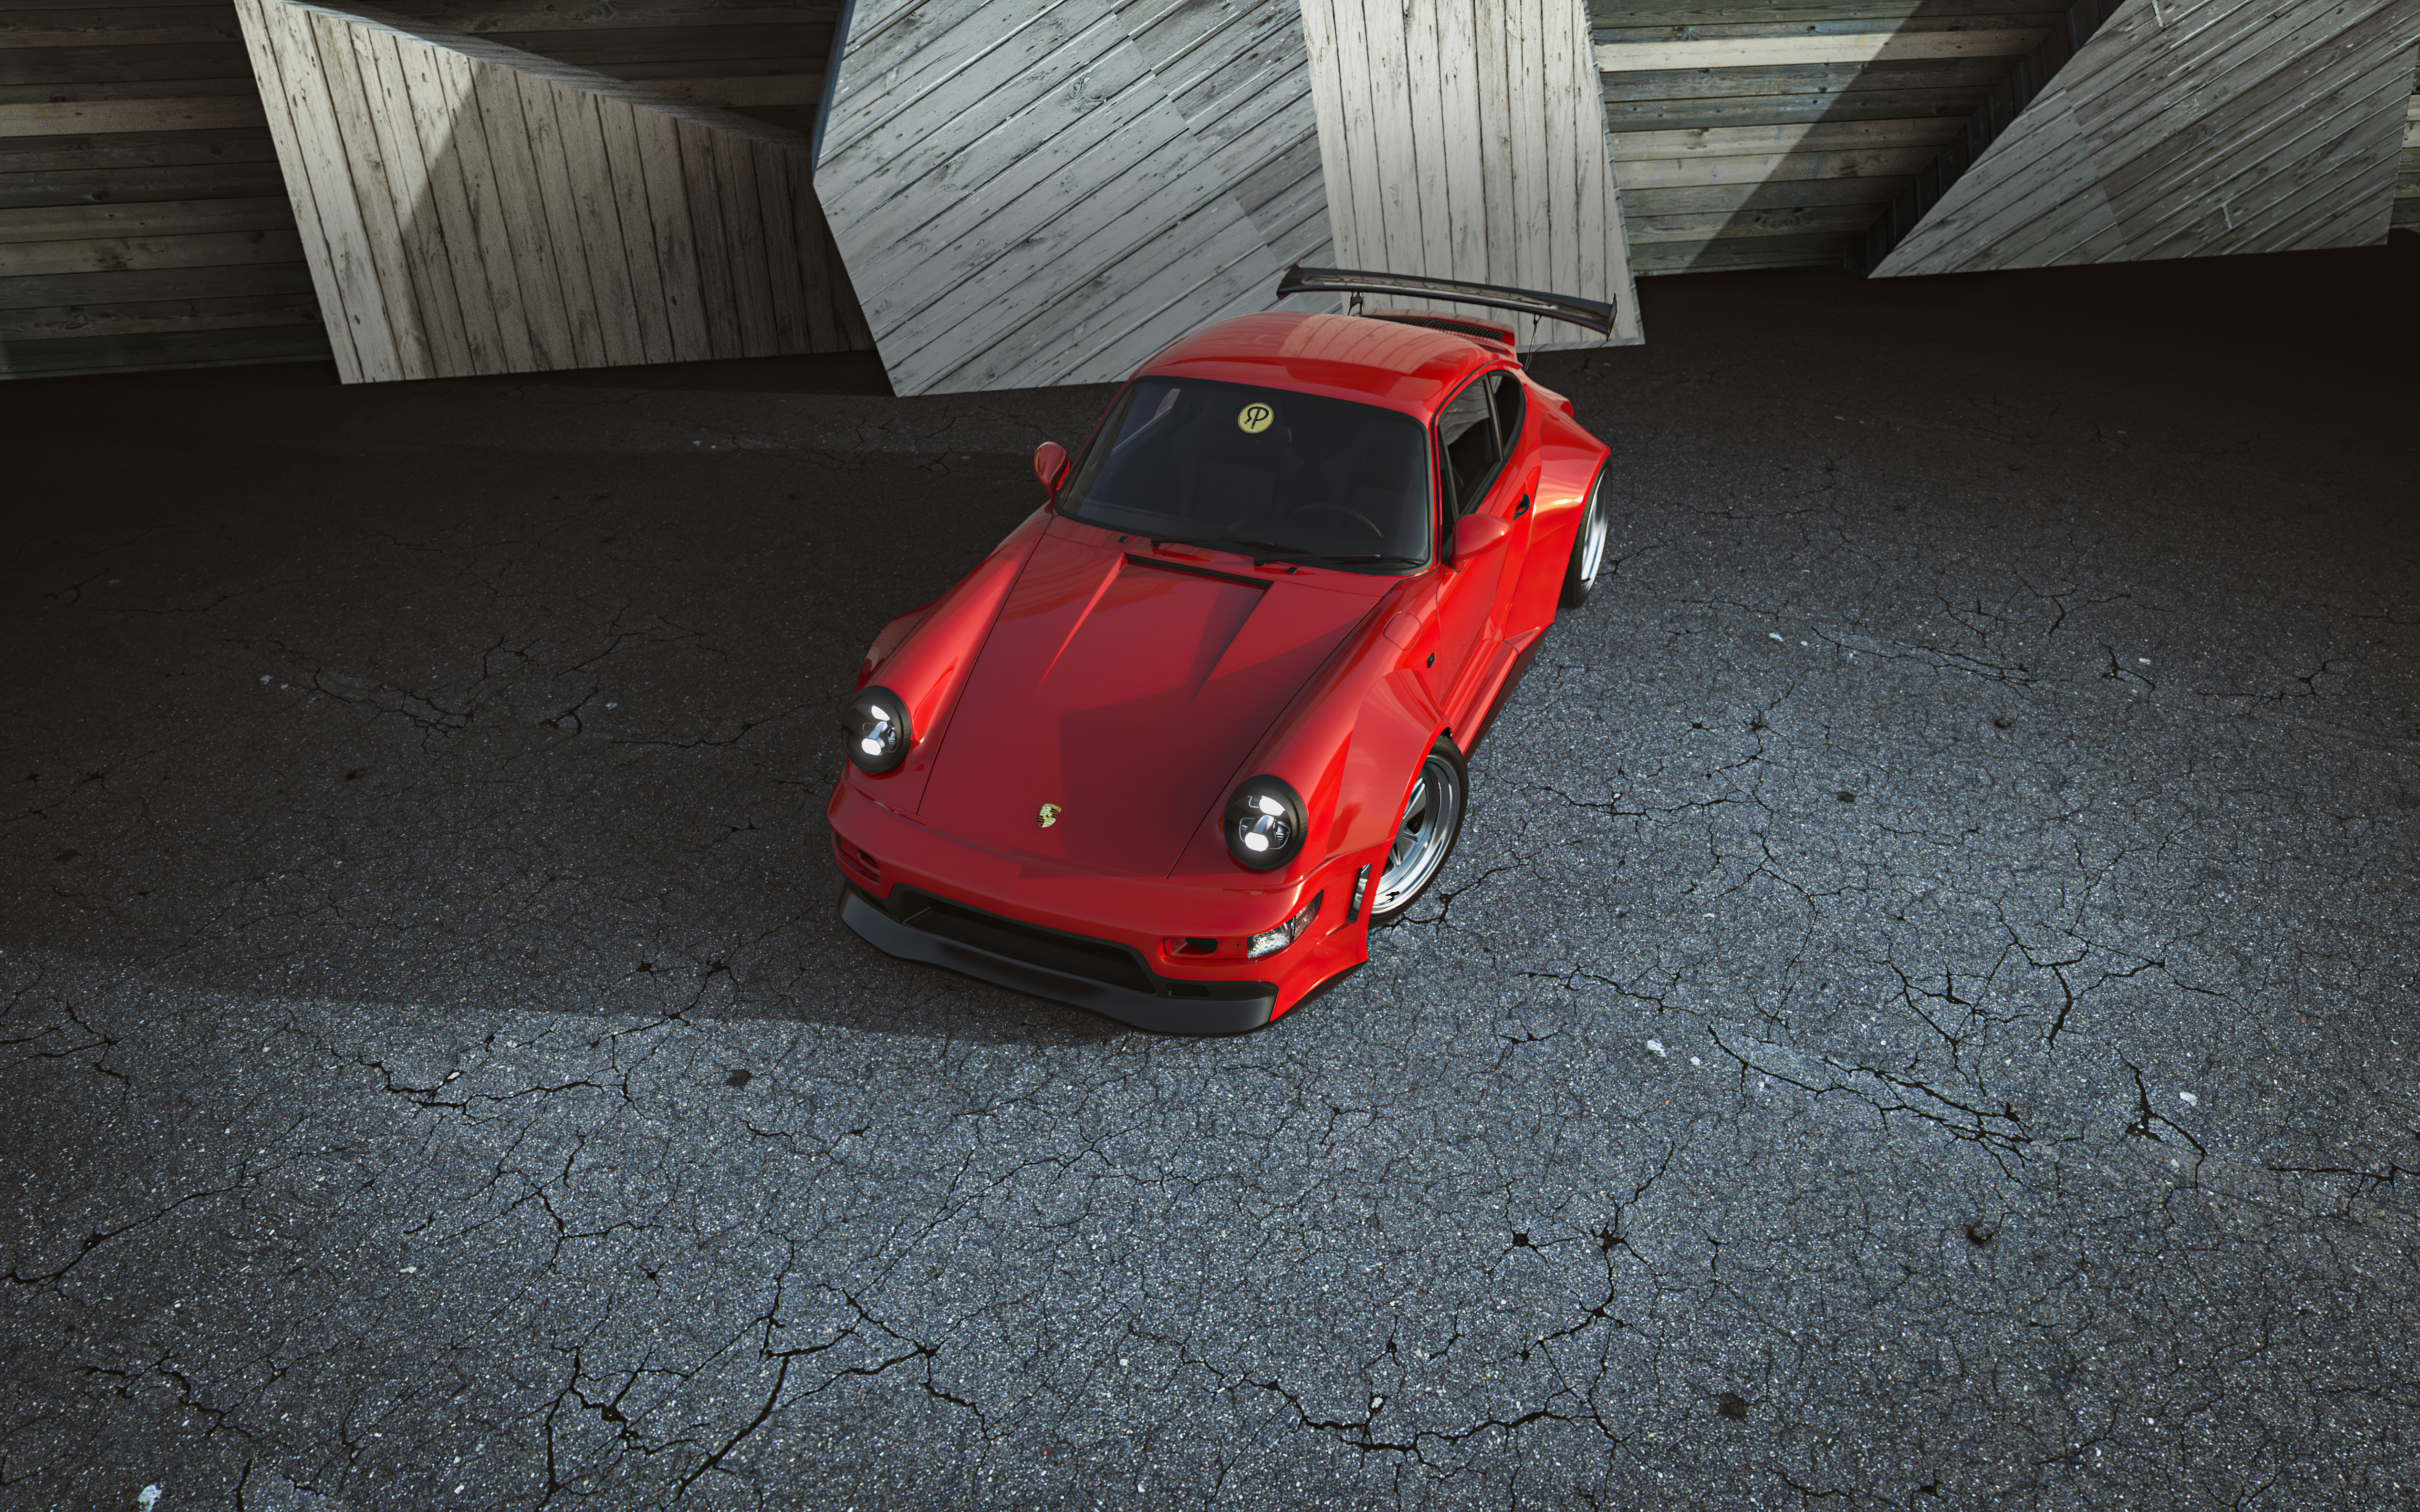 Red vintage Porsche 911